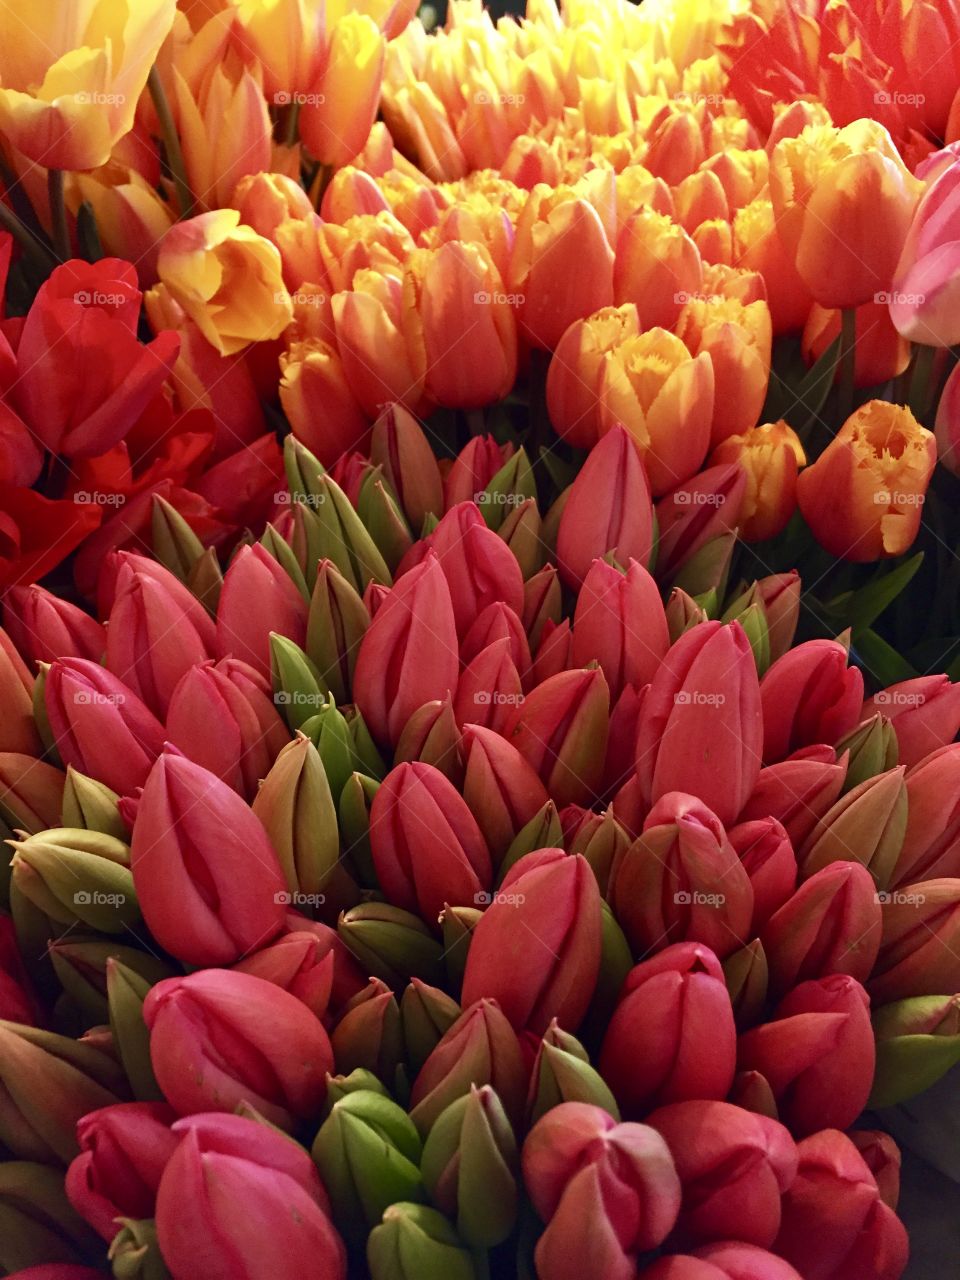 Full frame of tulips